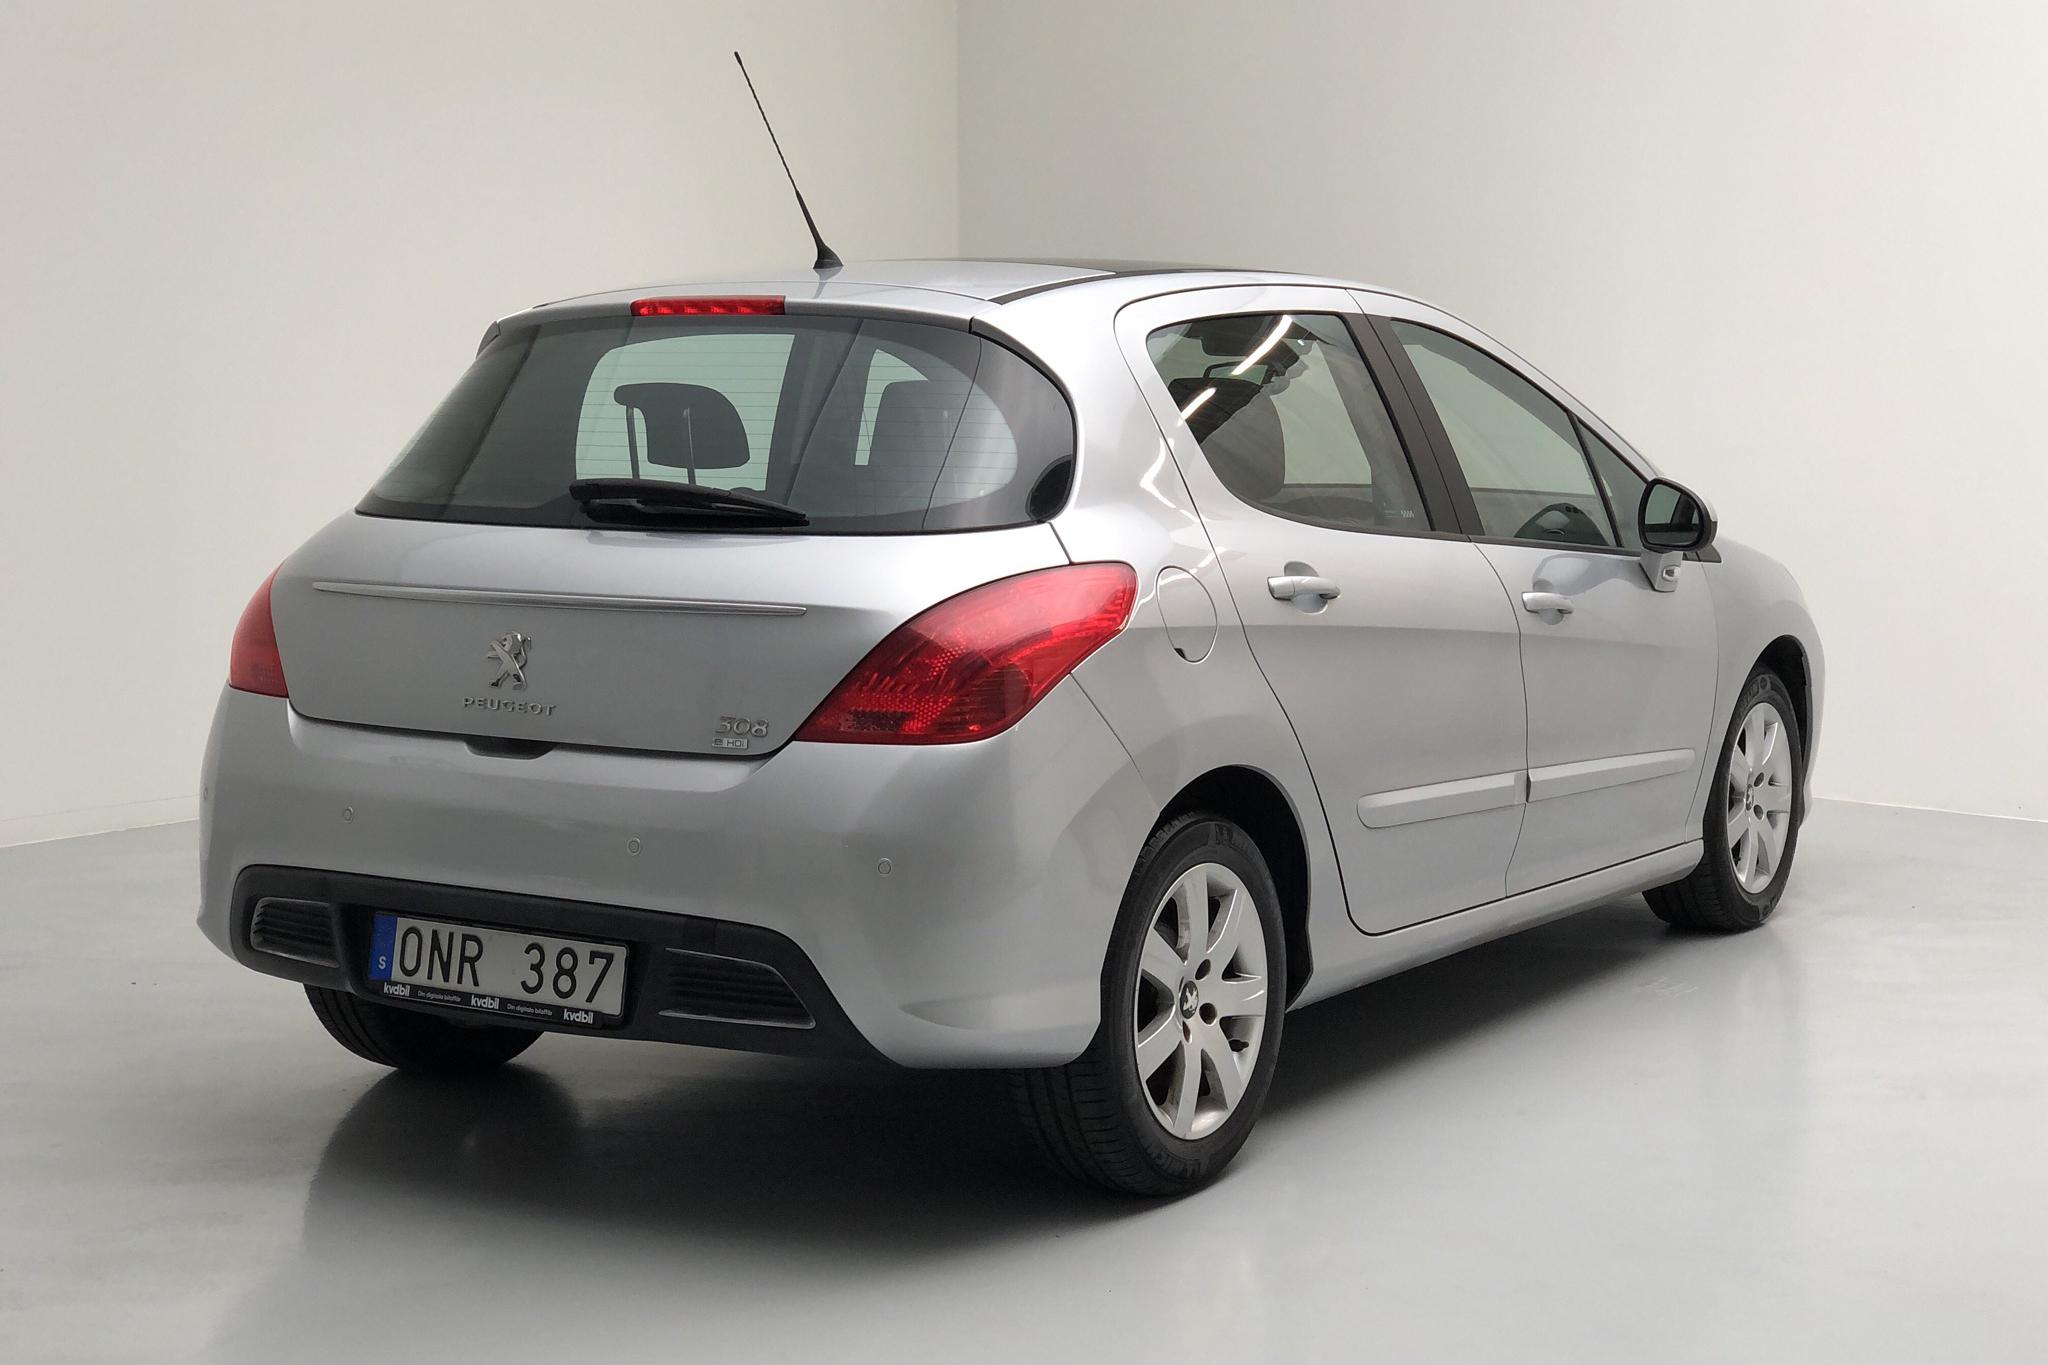 Peugeot 308 1.6 e-HDi 5dr (112hk) - 32 270 km - Automatic - Light Grey - 2013